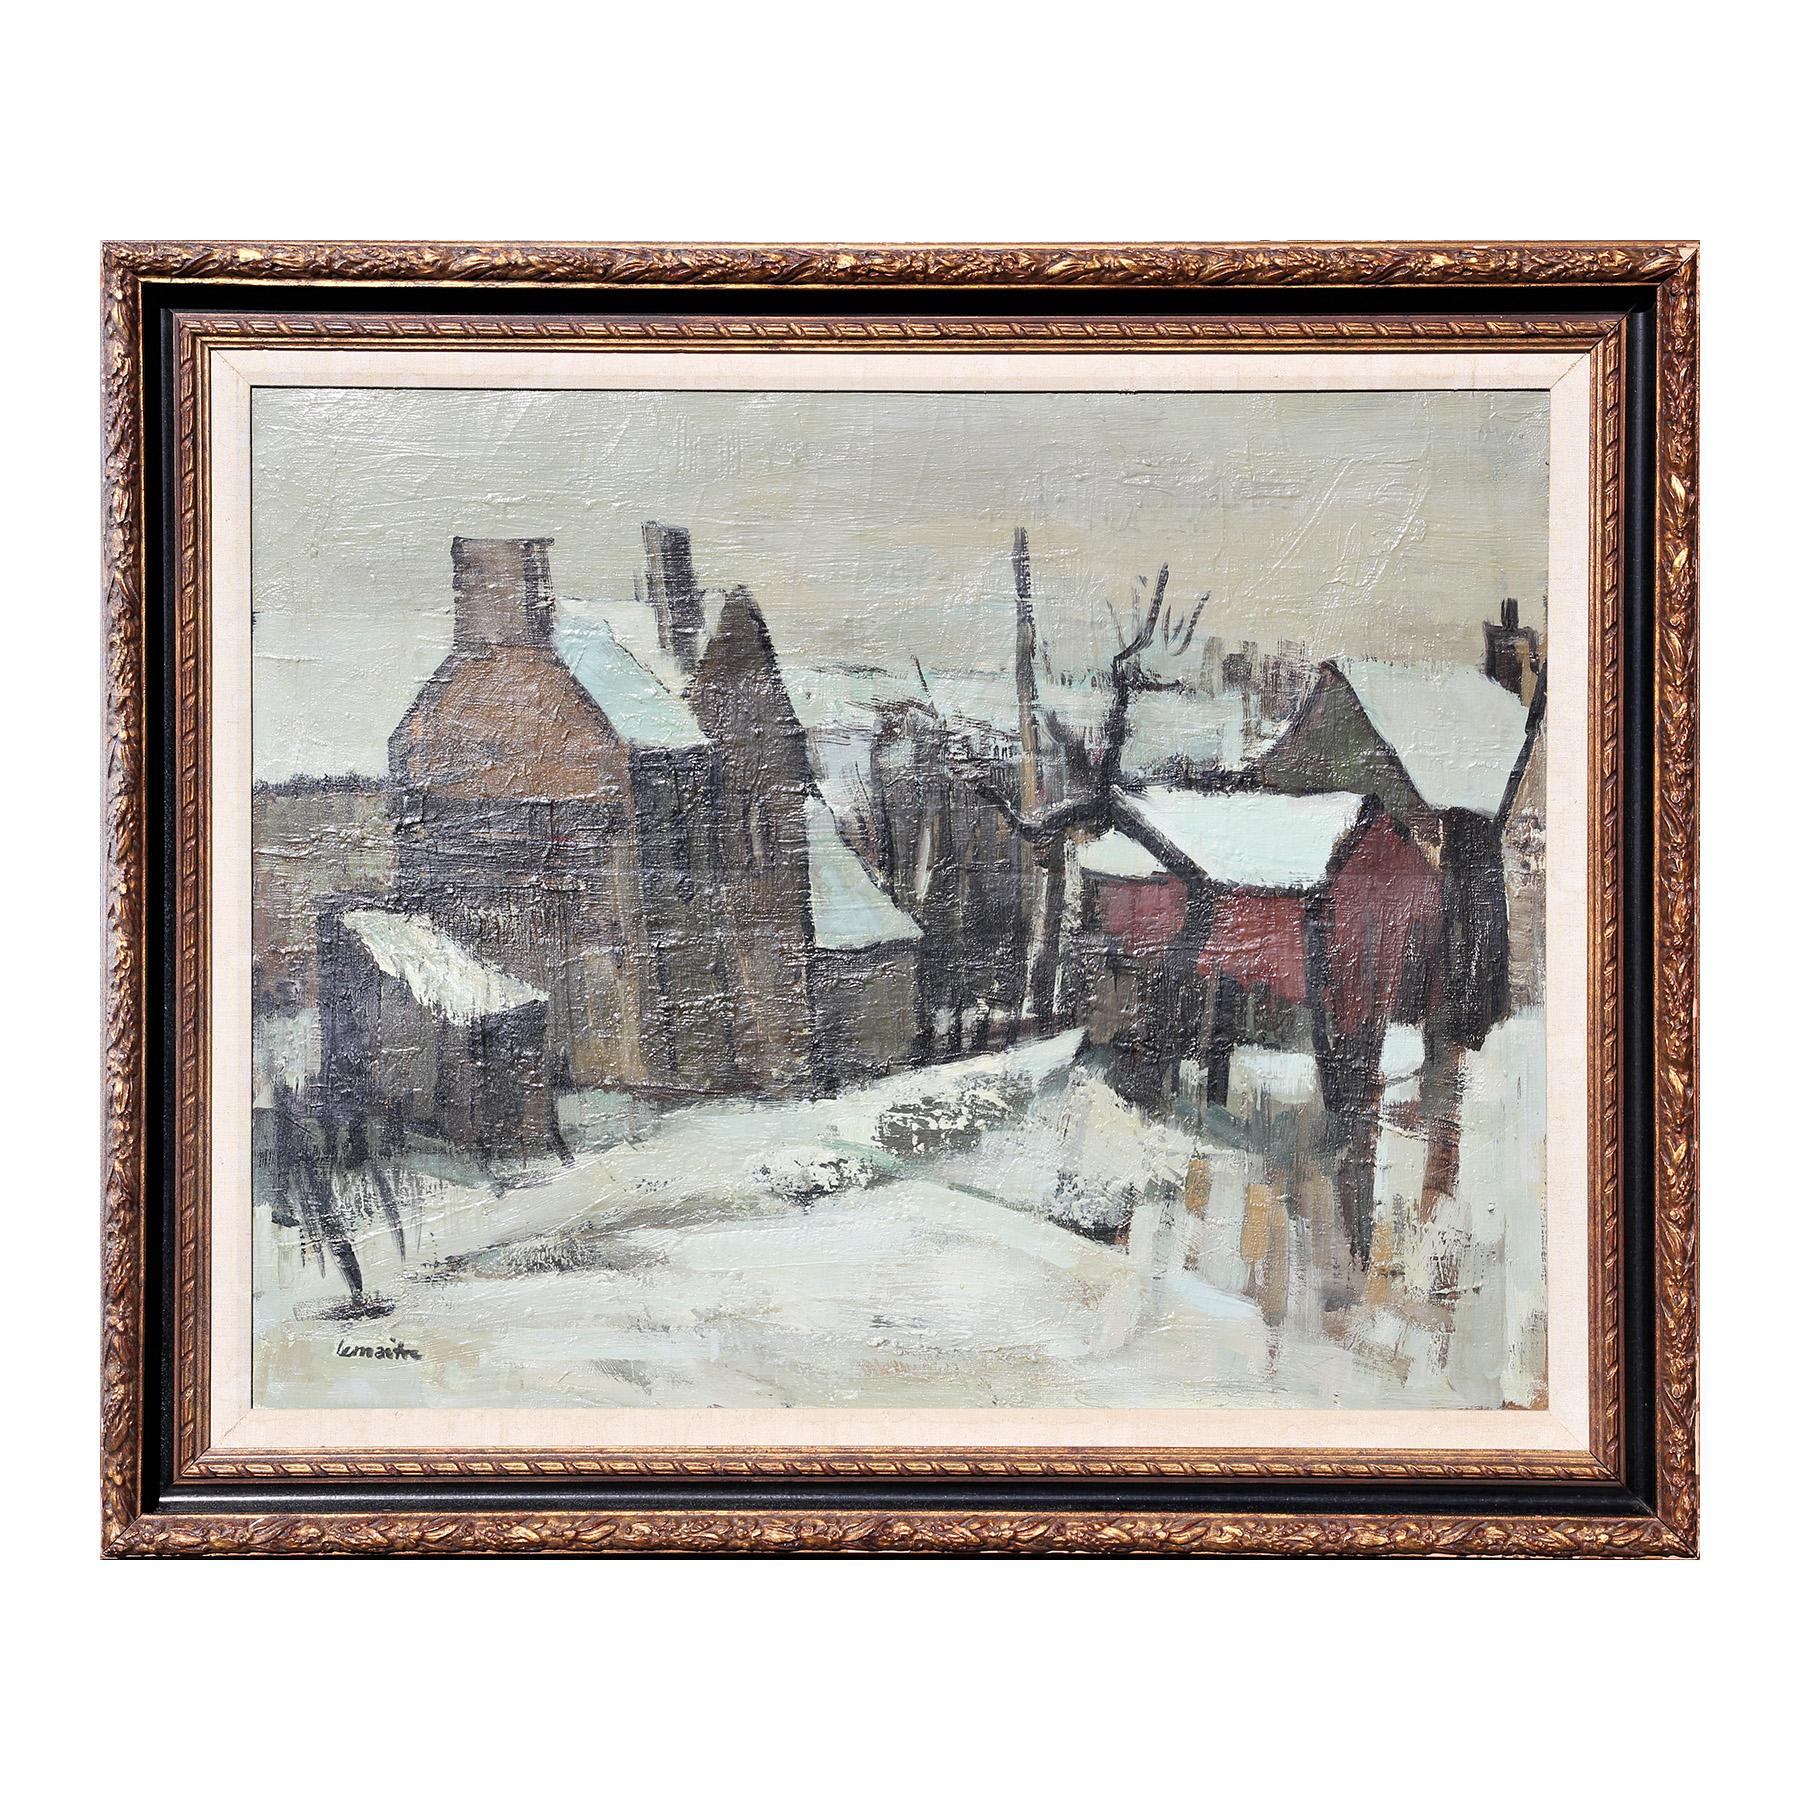 Paysage de neige Peinture impressionniste de paysage champêtre des neiges Paysage de neige - Painting de André Lemaitre